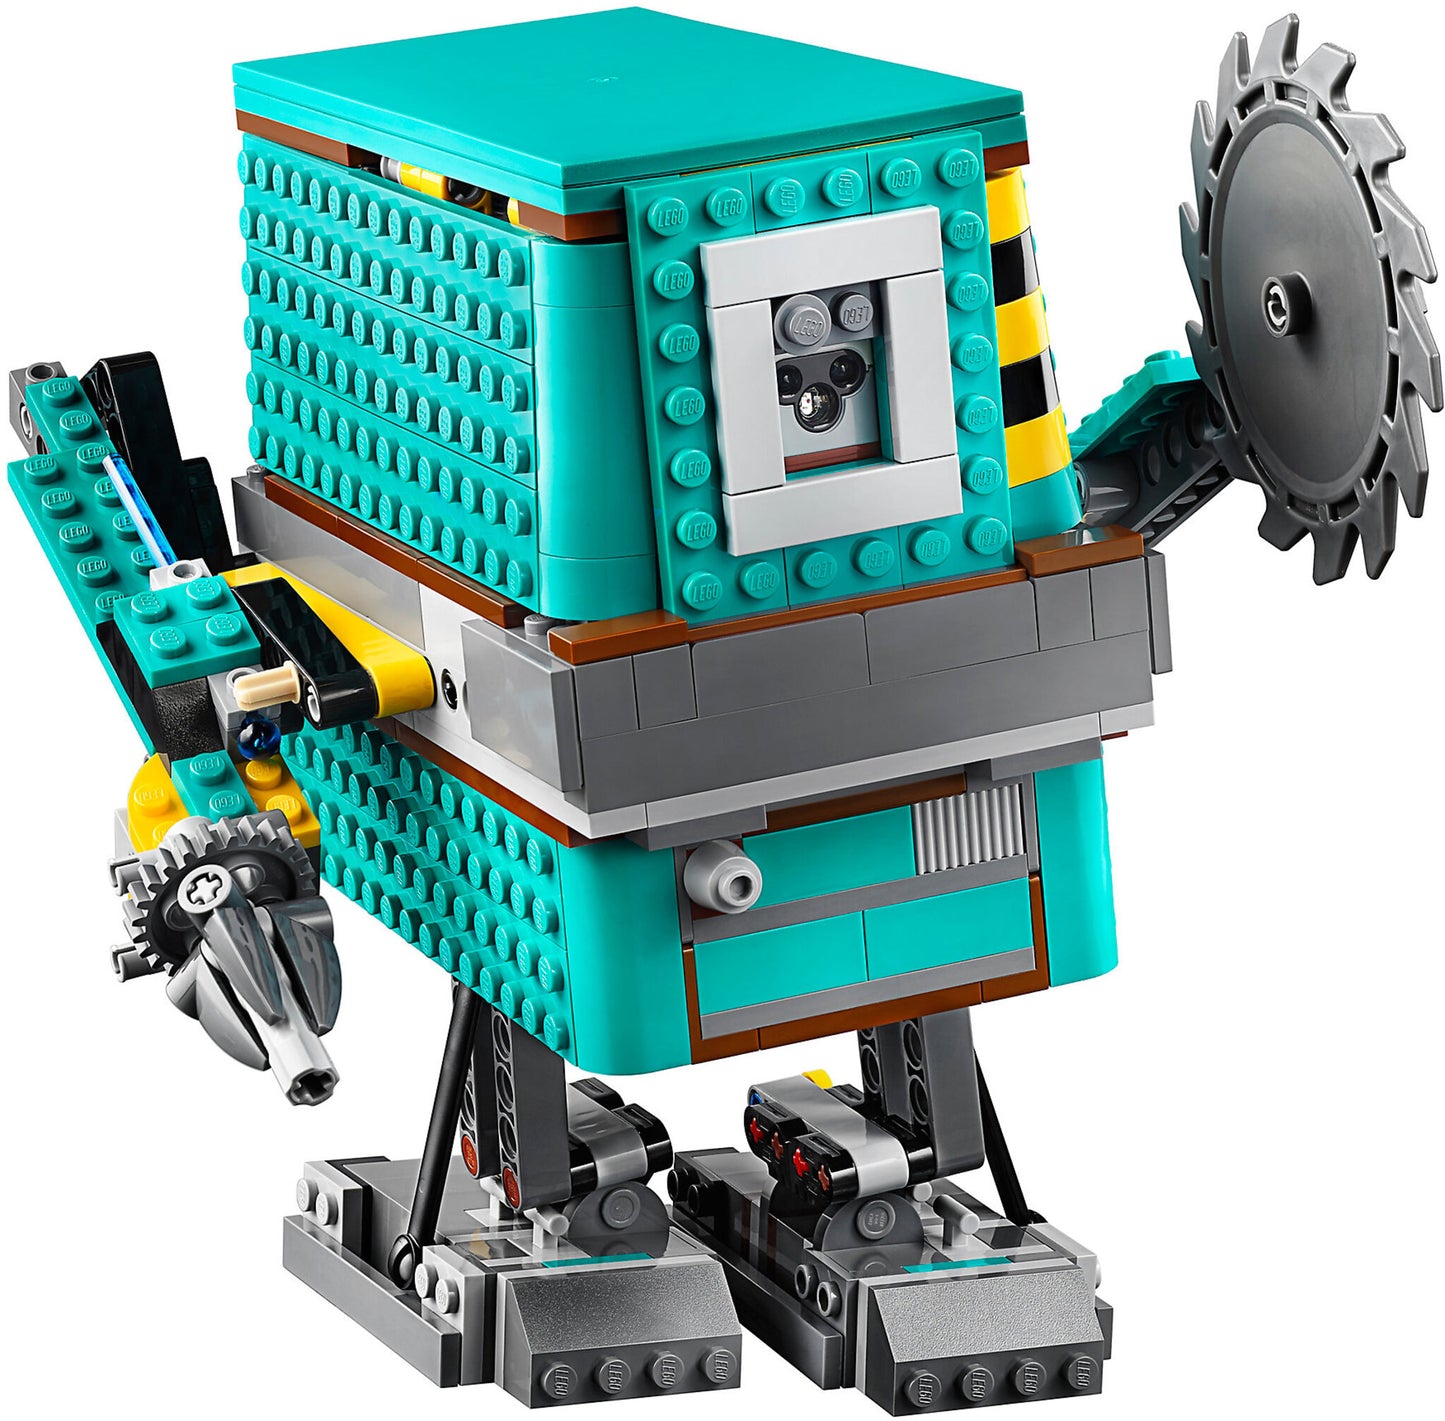 75253 LEGO Boost - Comandante Droide